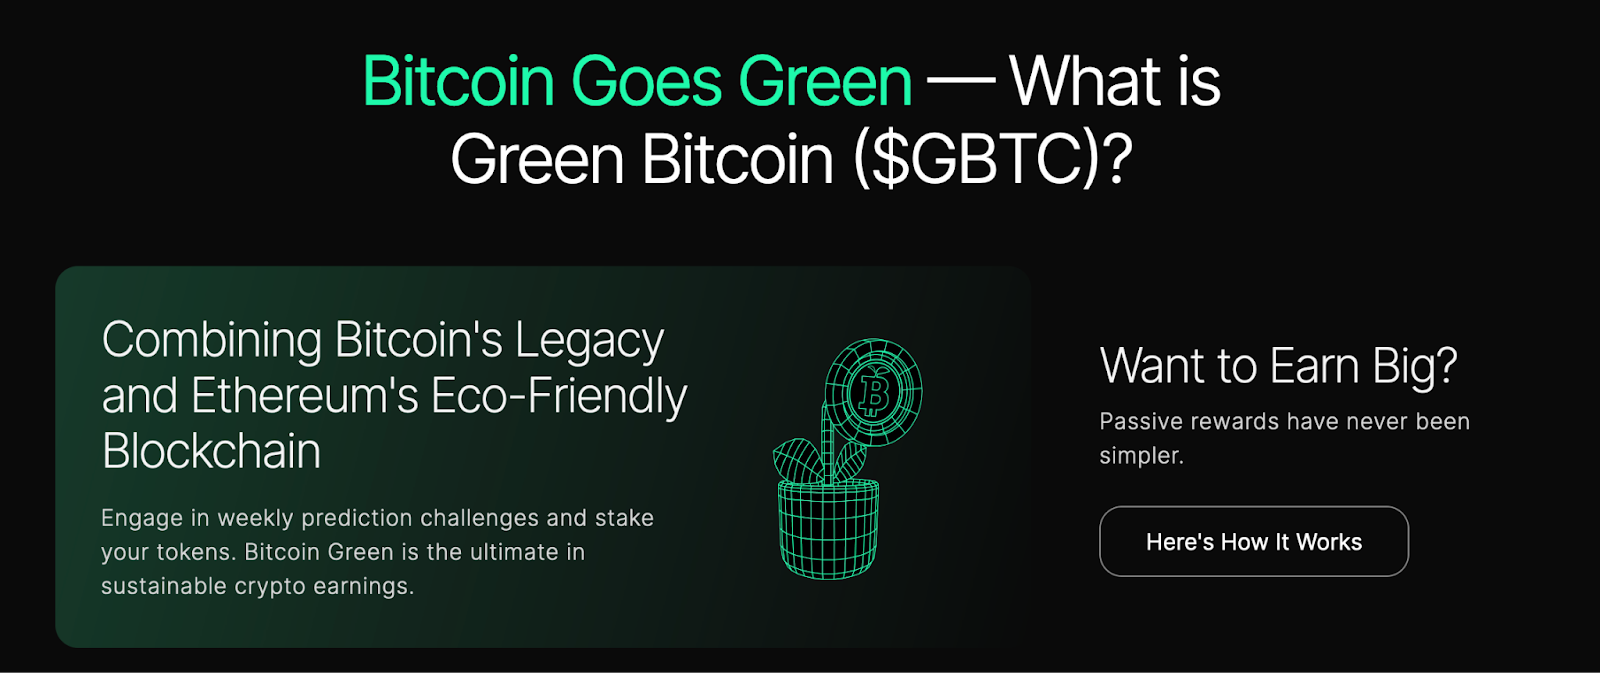 Green Bitcoin ($GBTC) é a próxima grande novidade no mundo do Bitcoin – Lucre com previsões sobre o BTC